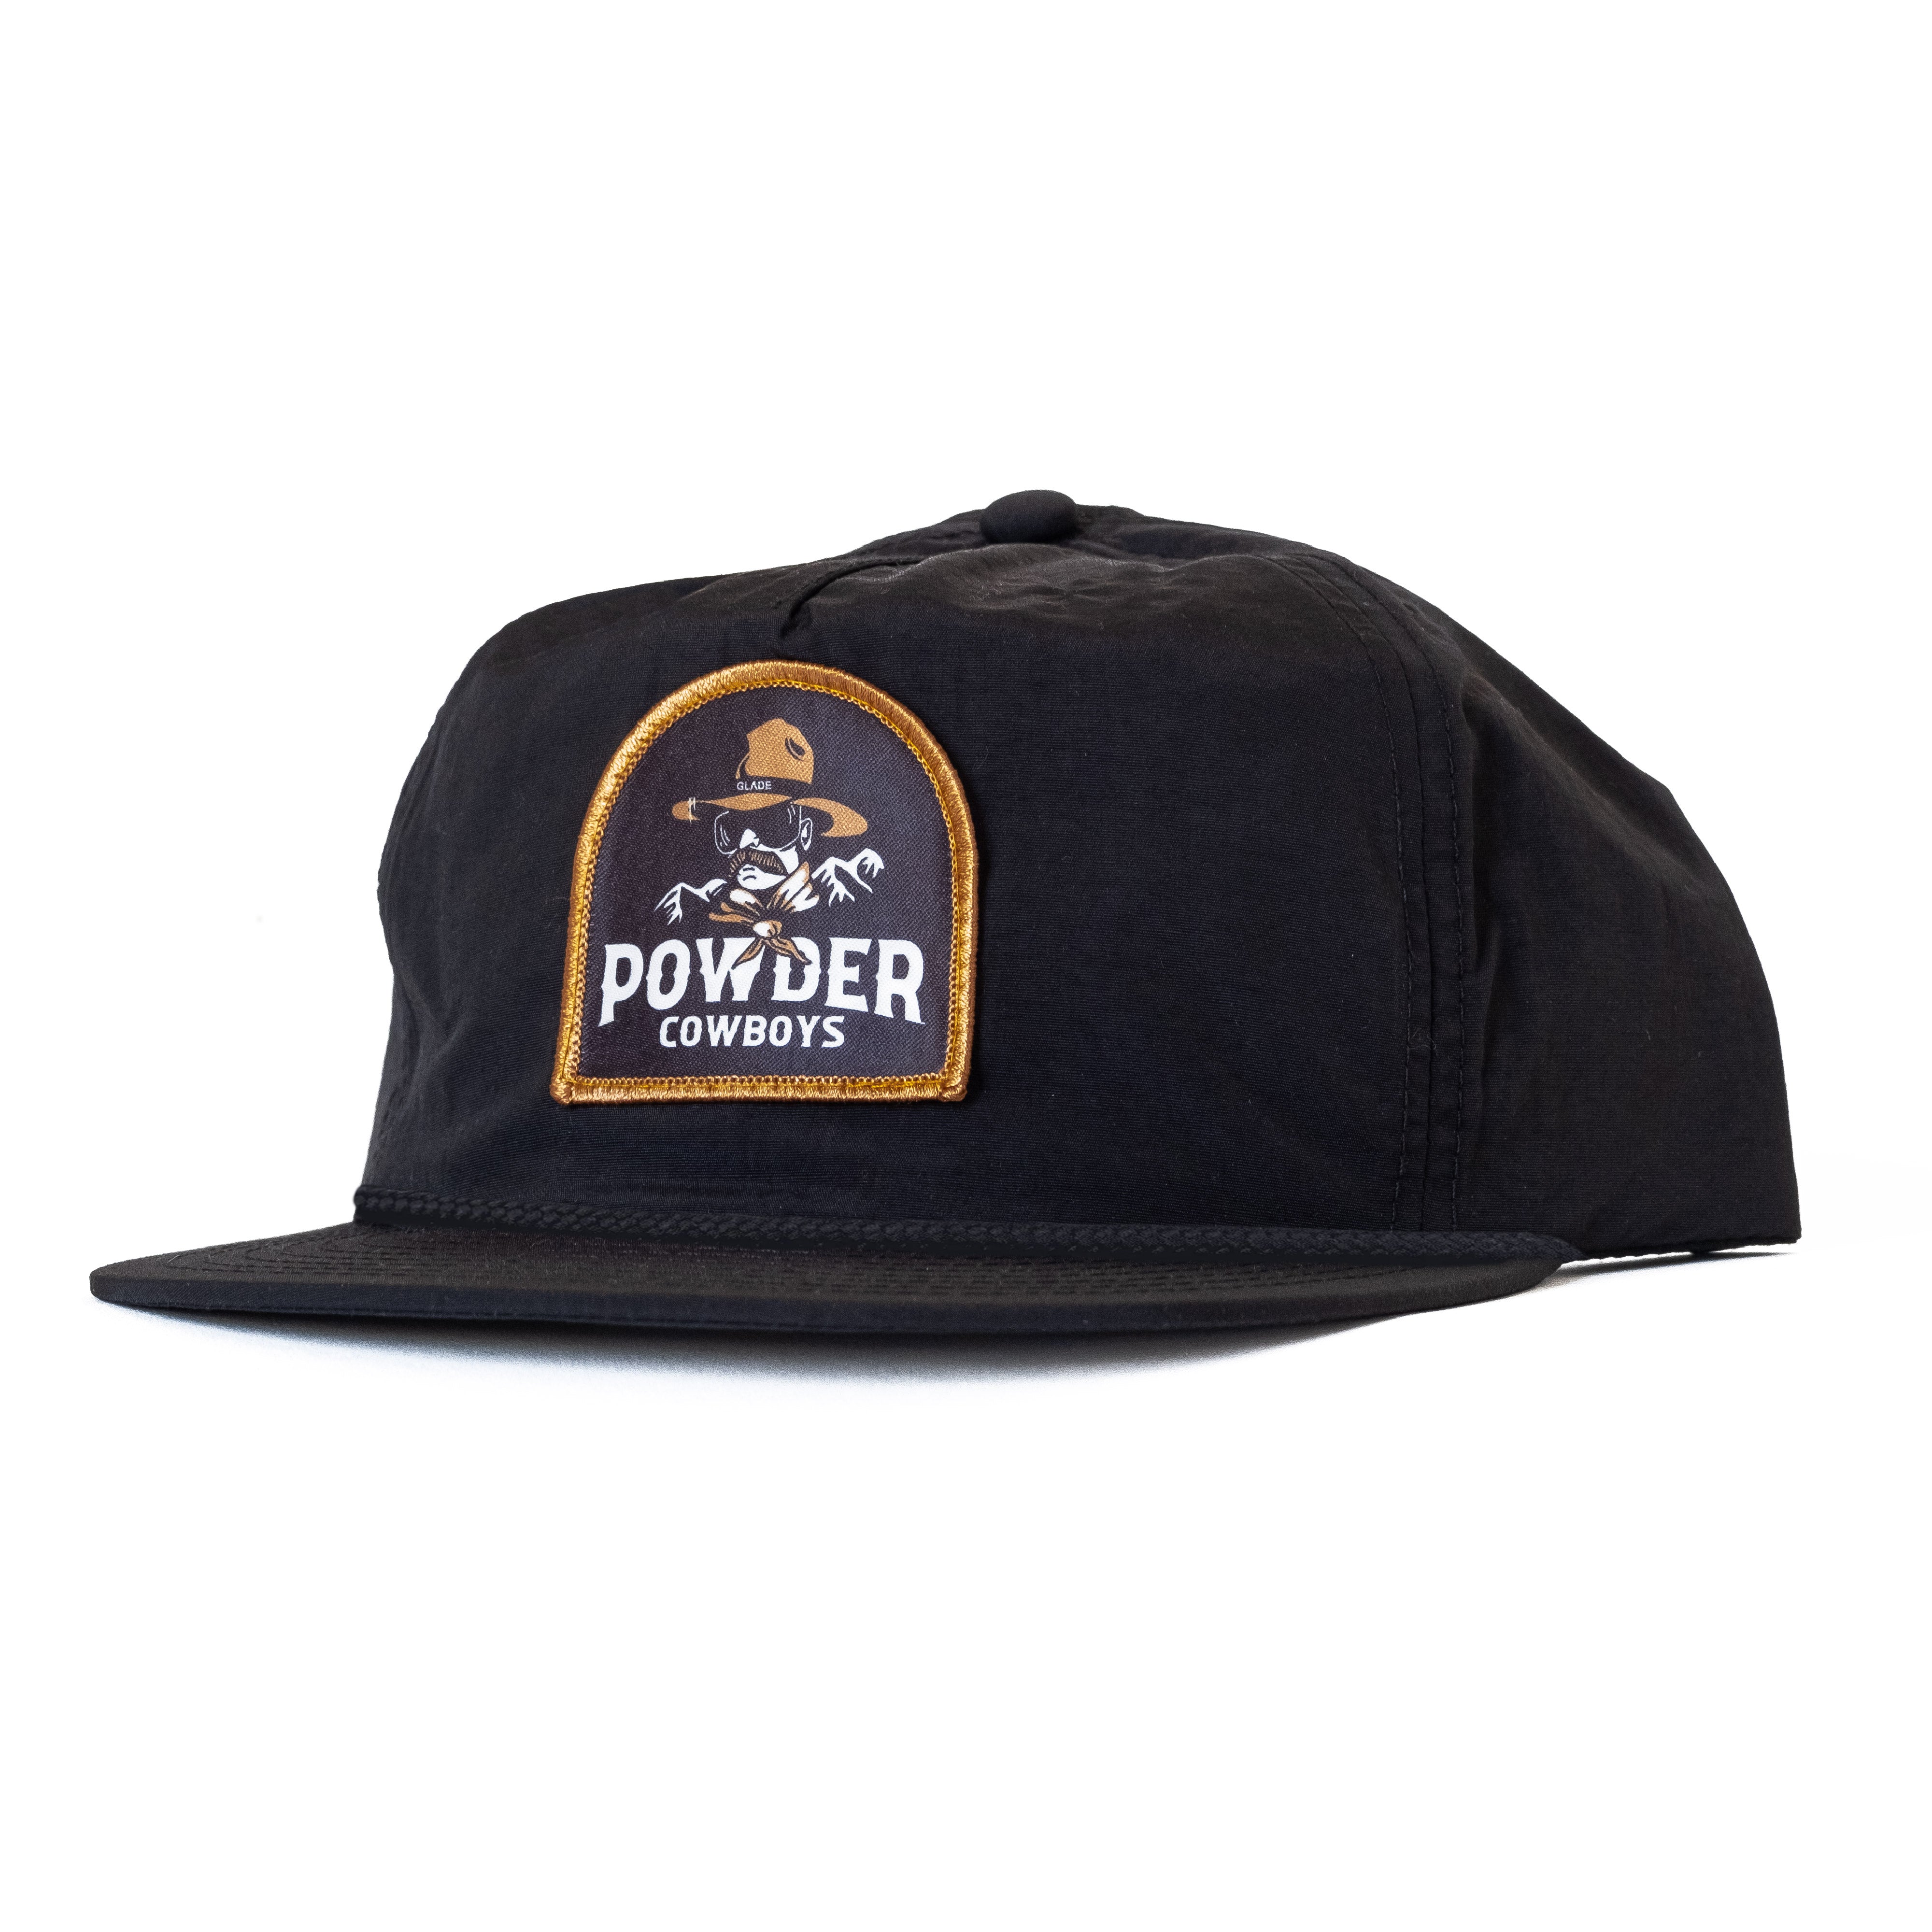 Powder Cowboys LTD Hat